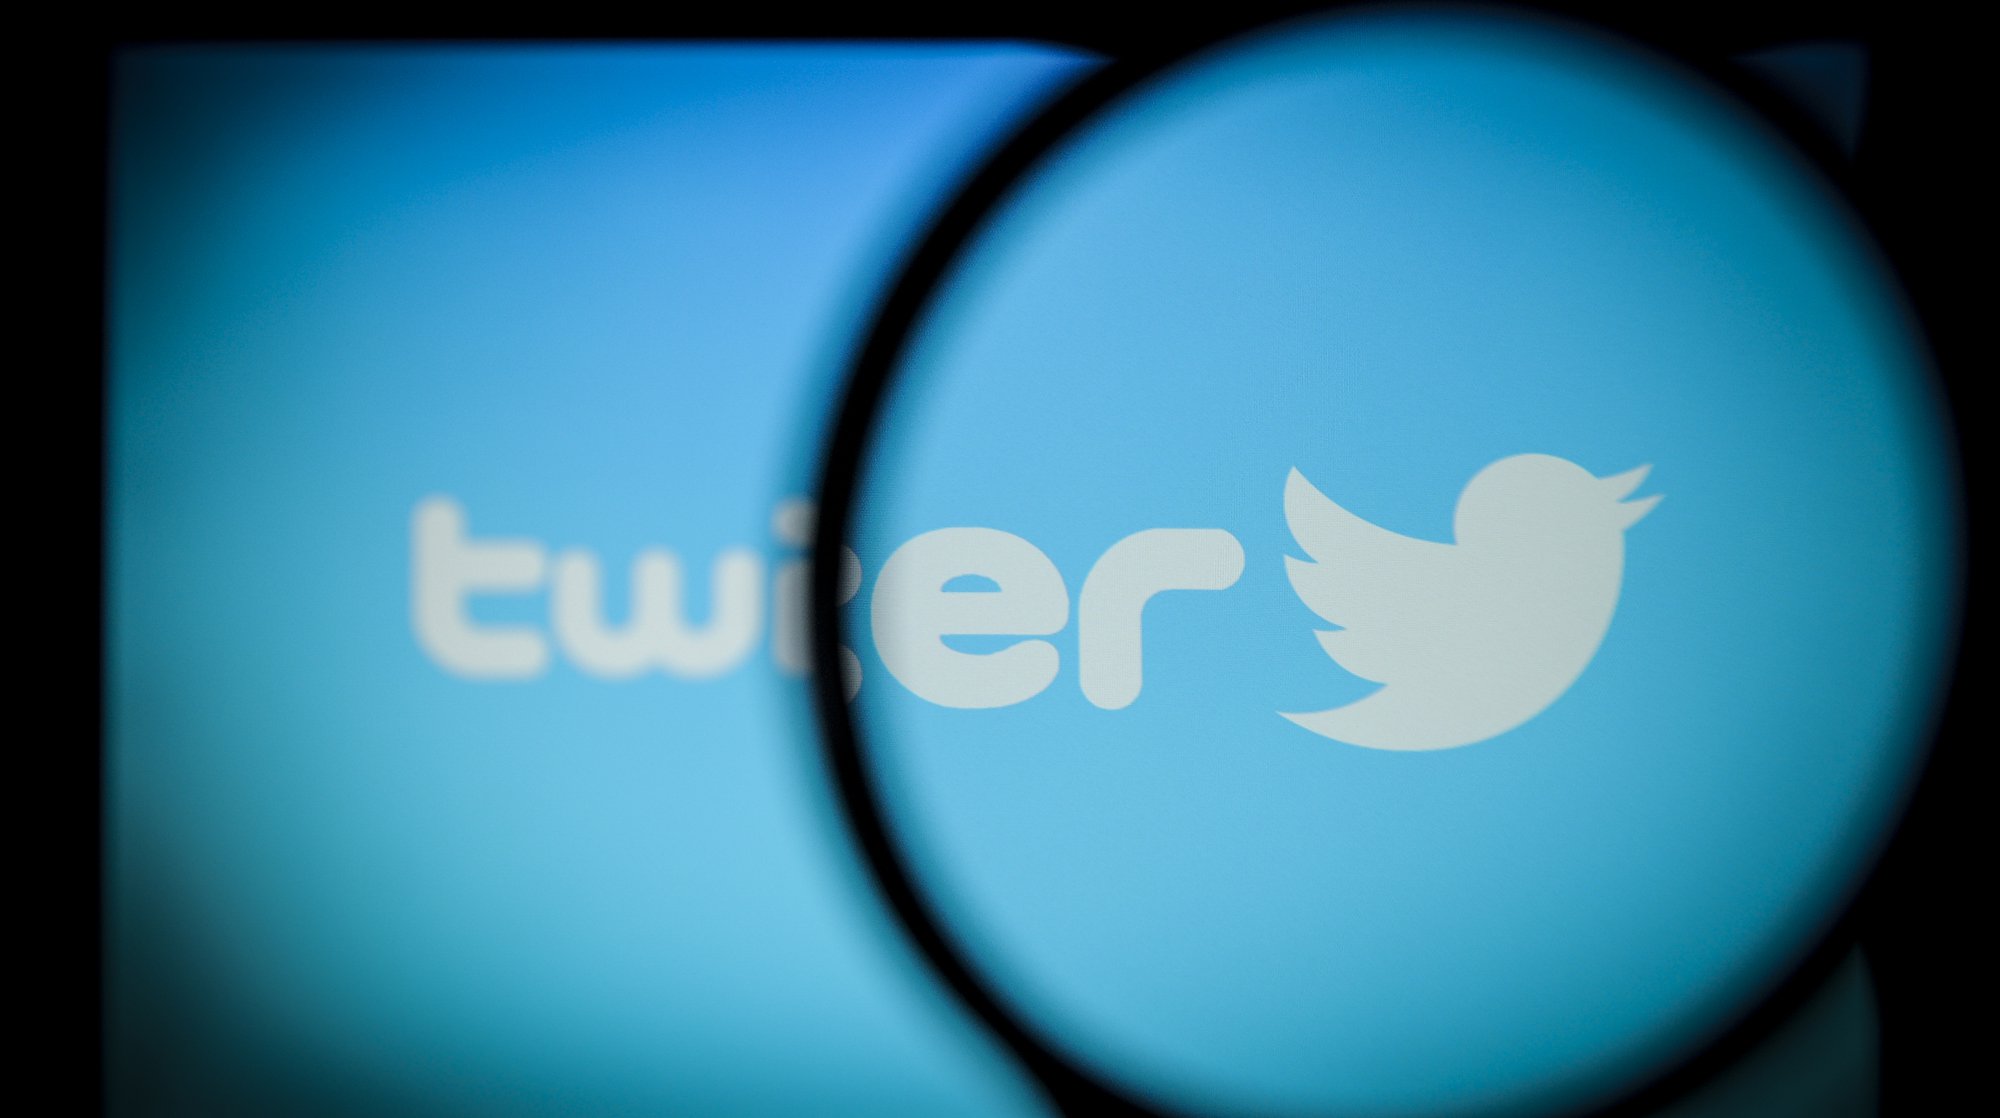 Dailystorm - В МИДе предположили, что Twitter лишил RT рекламы под давлением